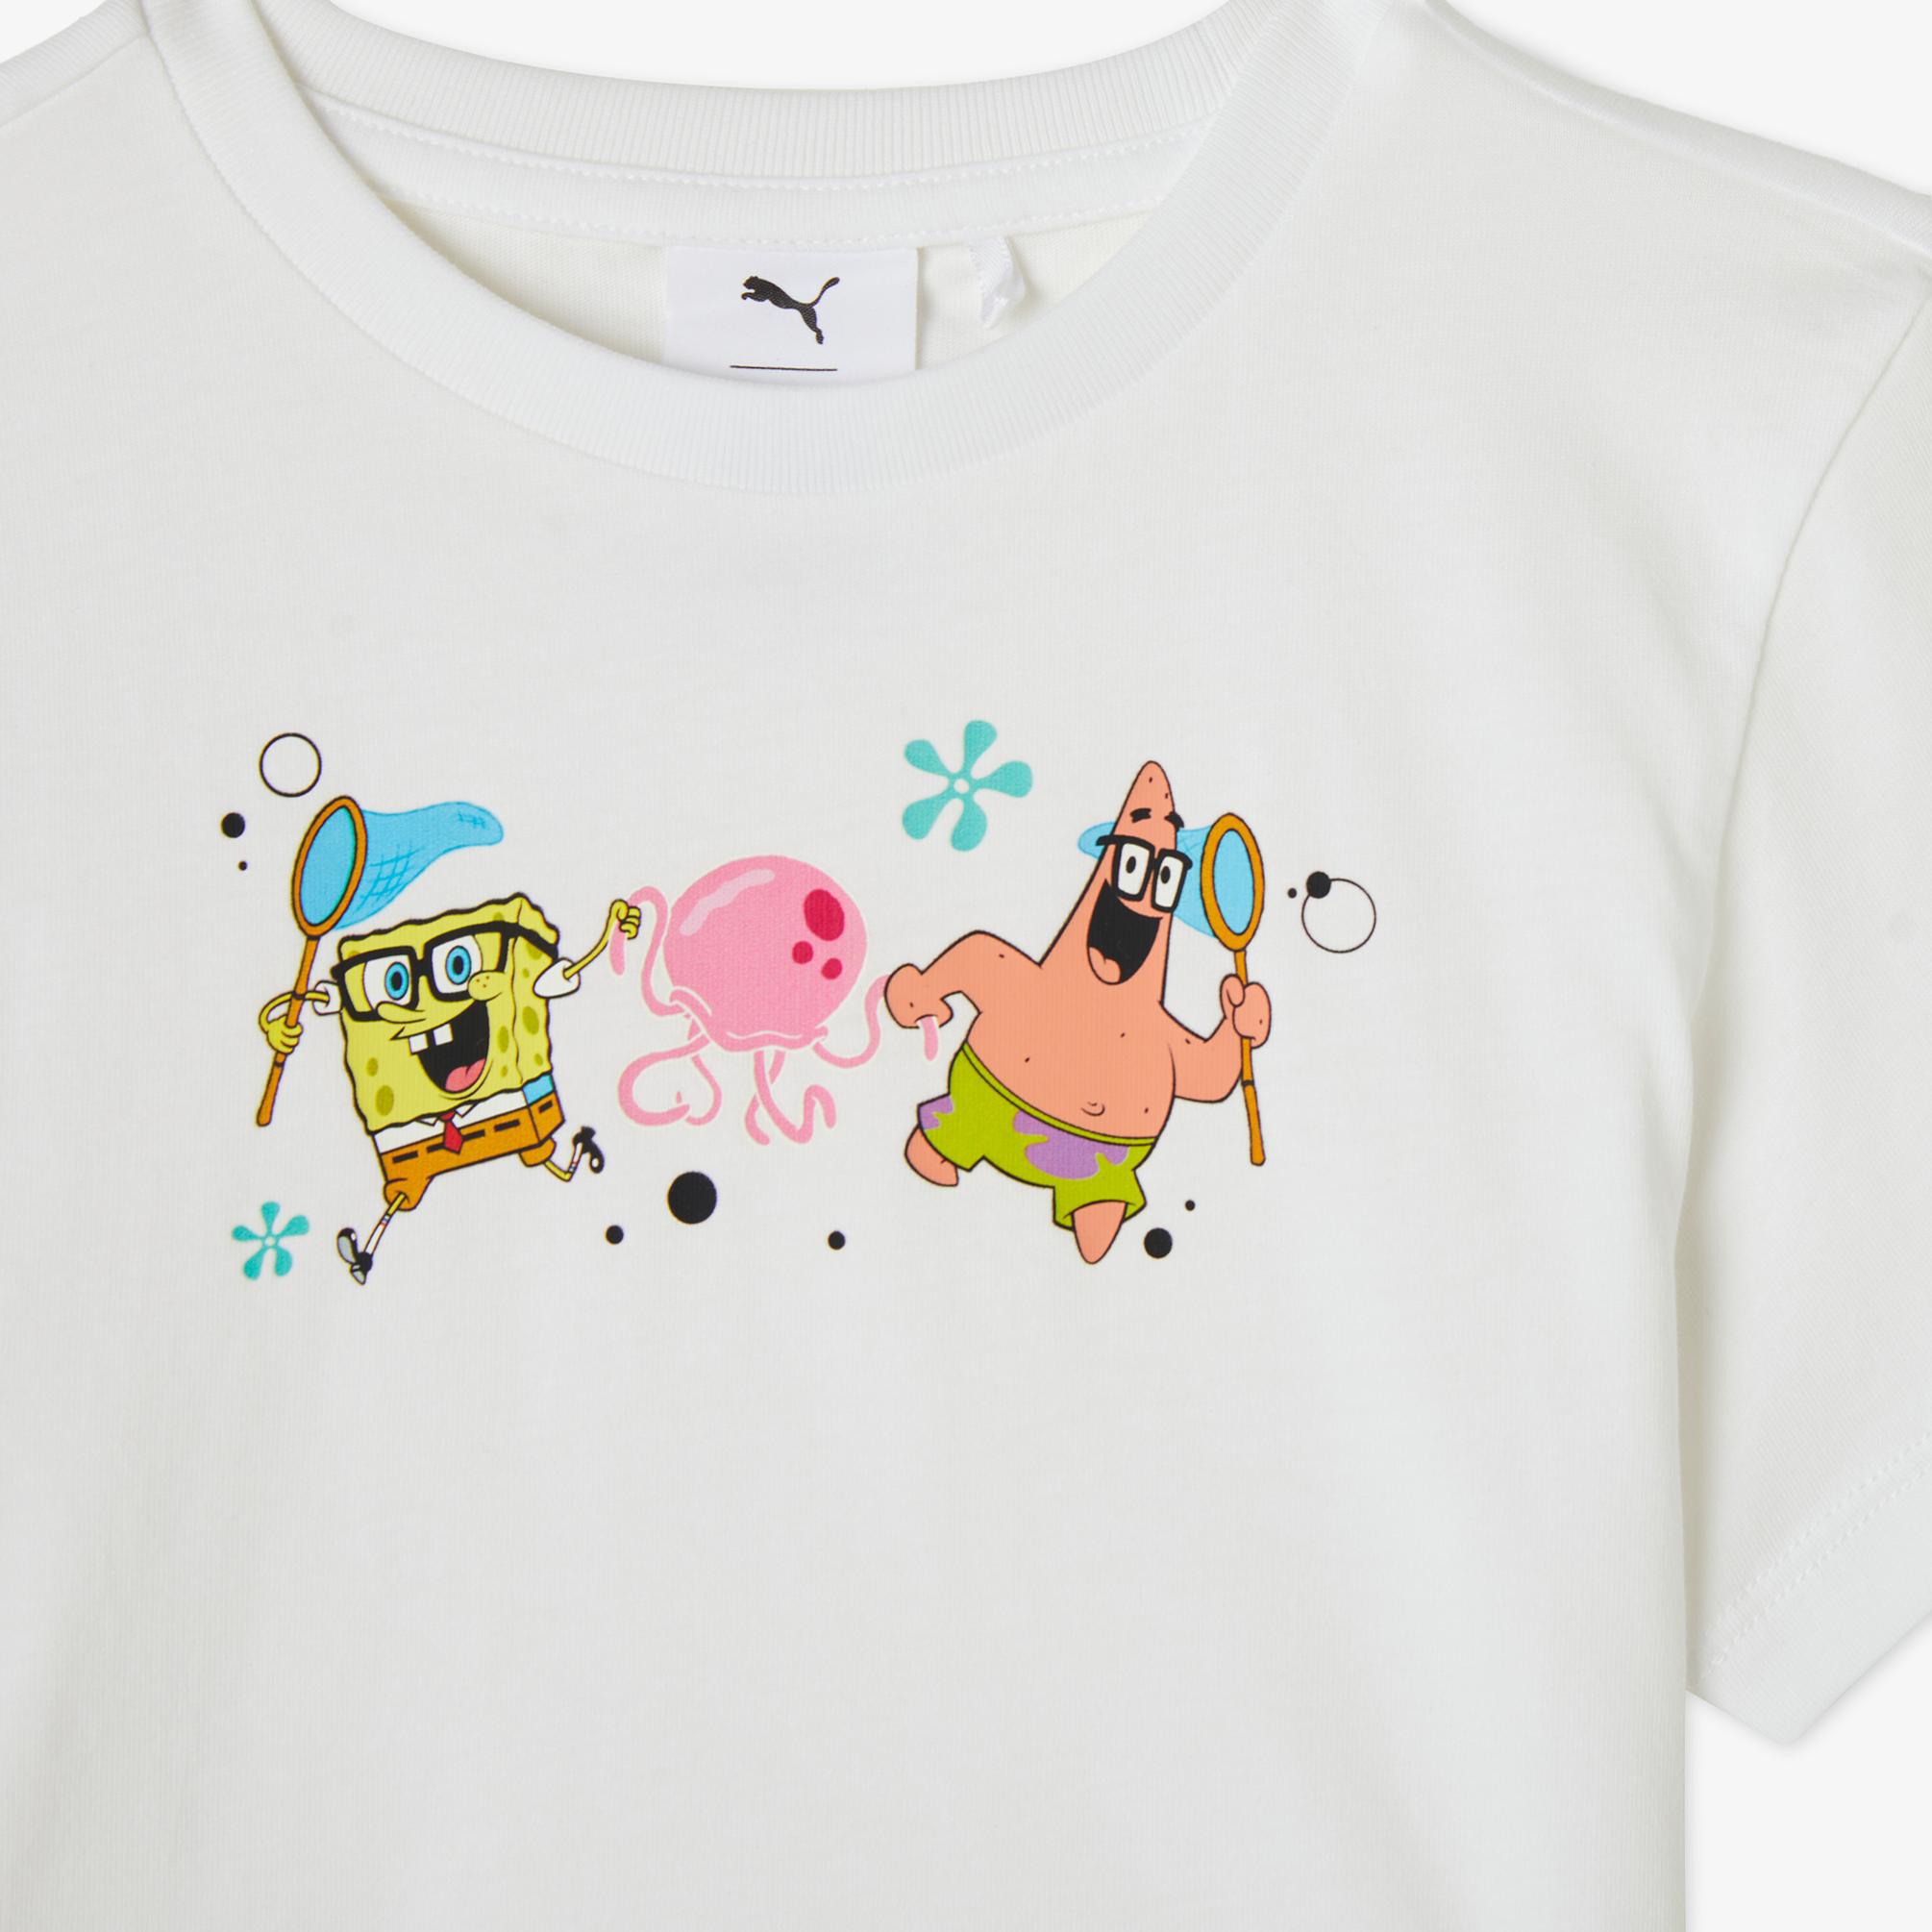  Puma X Spongebob Çocuk Beyaz T-Shirt